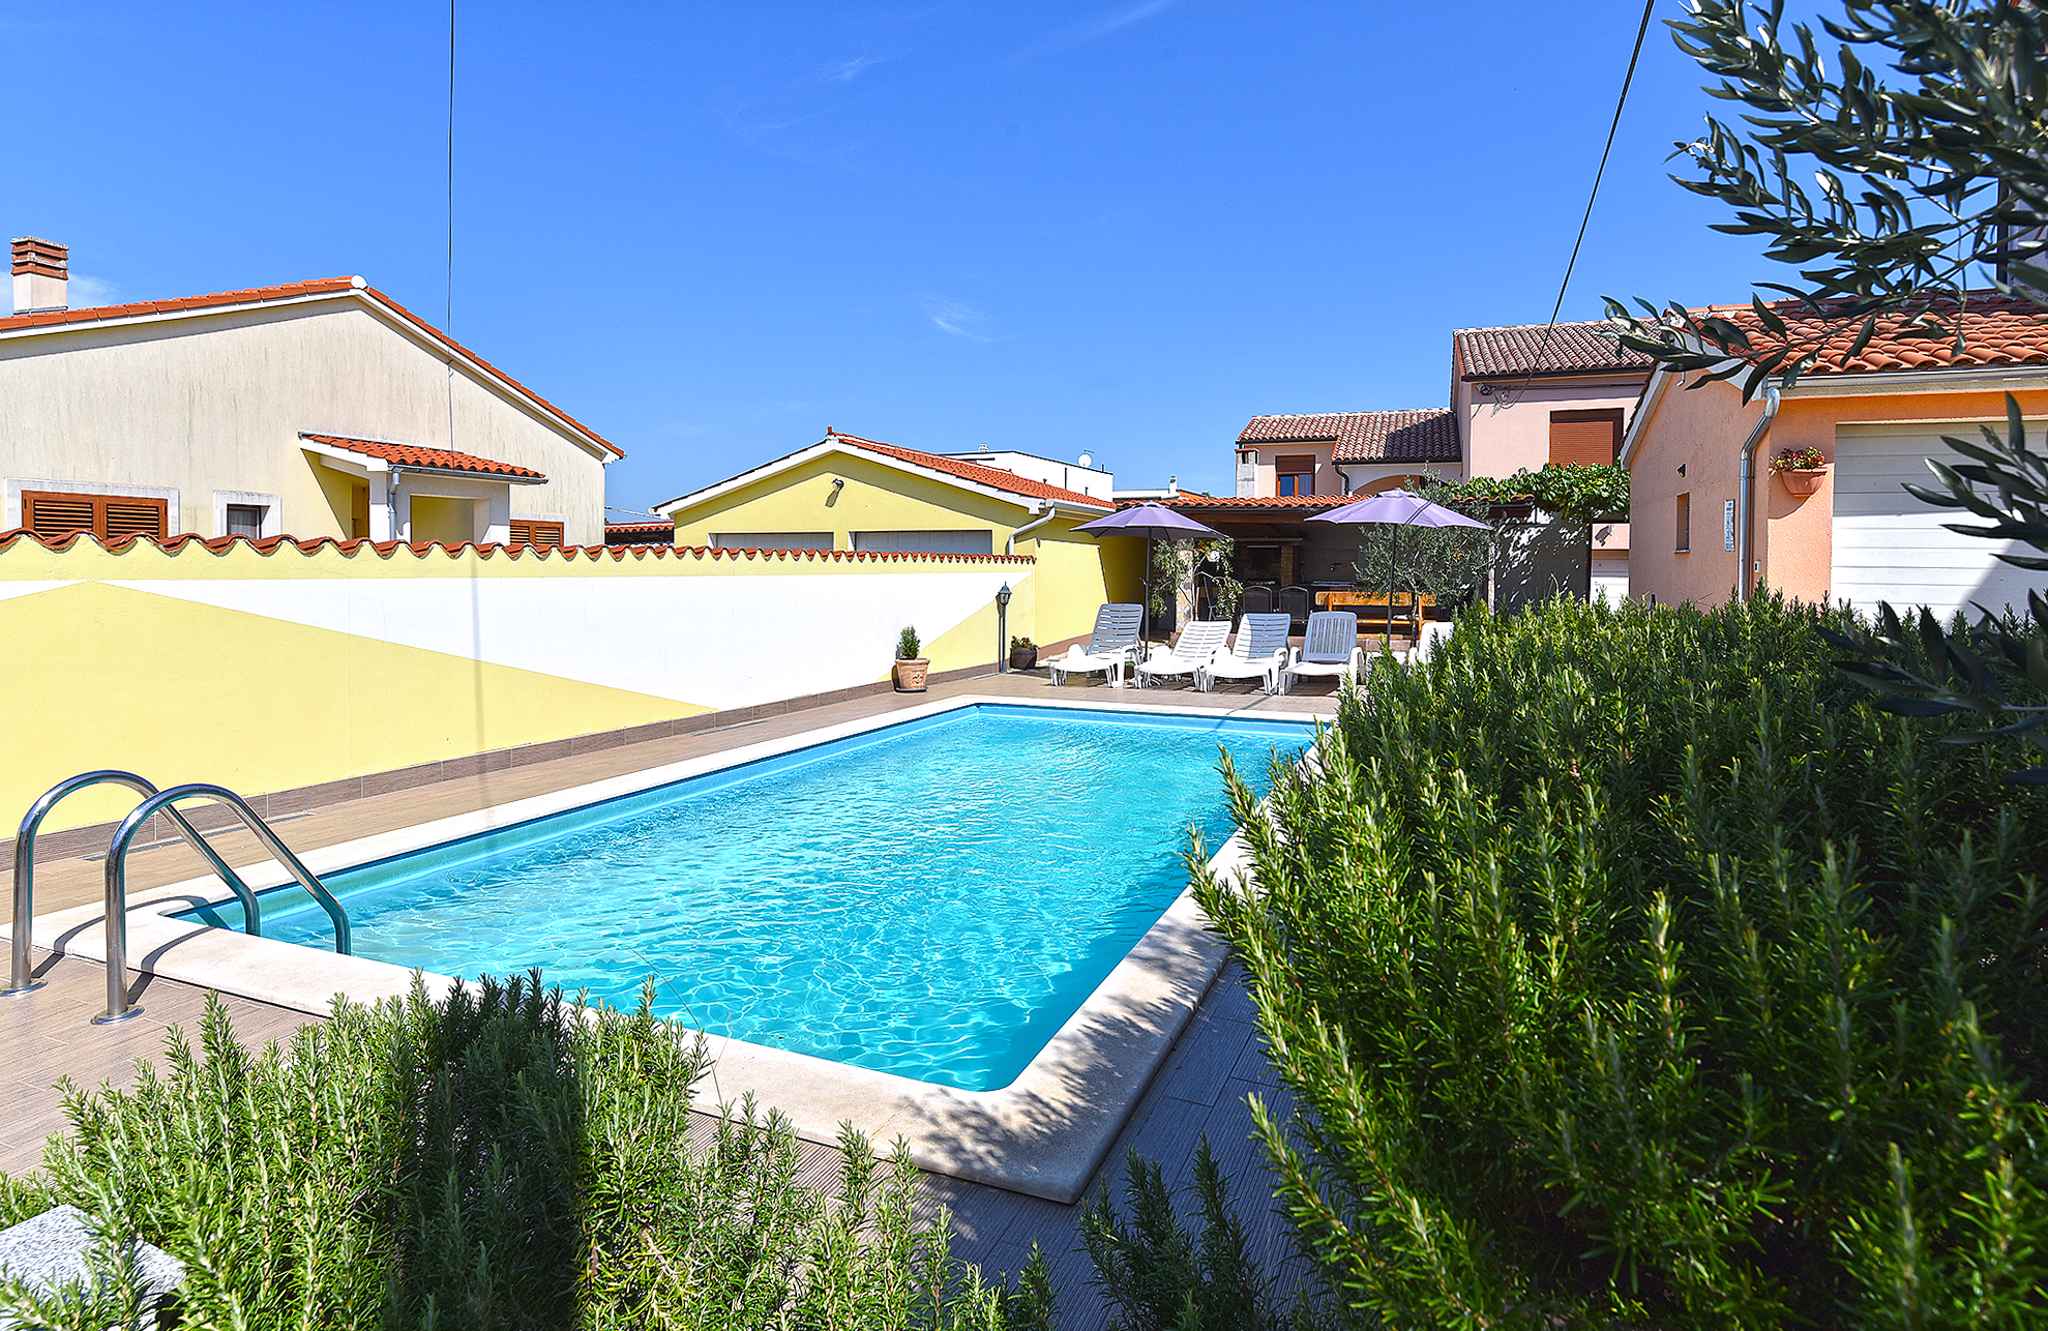 Villa mit Swimmingpool und Spielraum im Garten Ferienhaus in Istrien